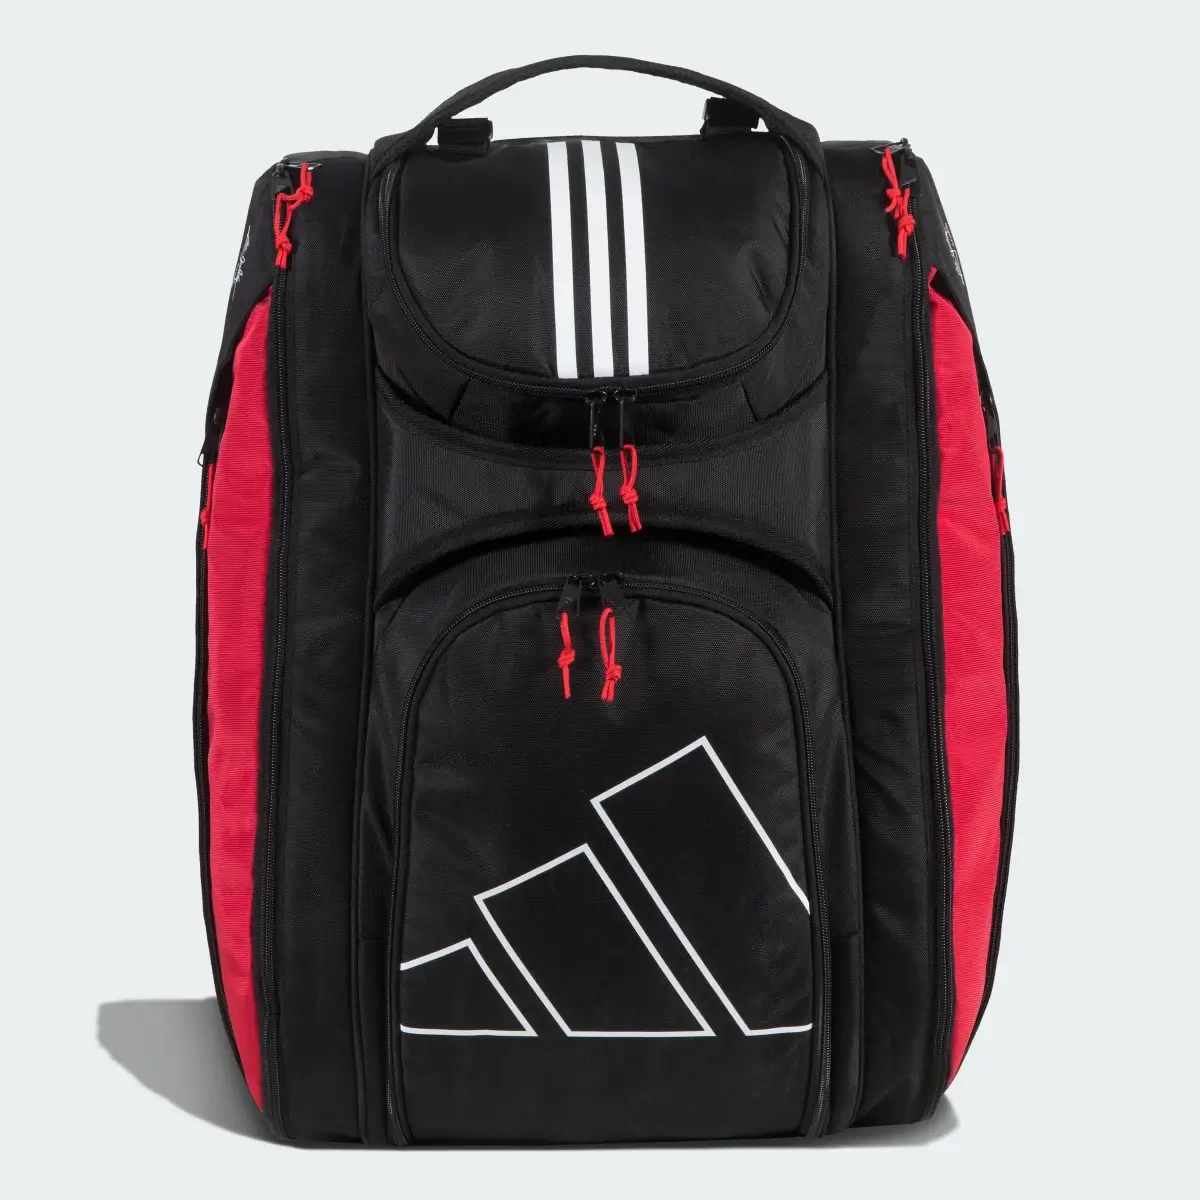 Adidas Racket Bag Multi-Game 3.3 Black. 1